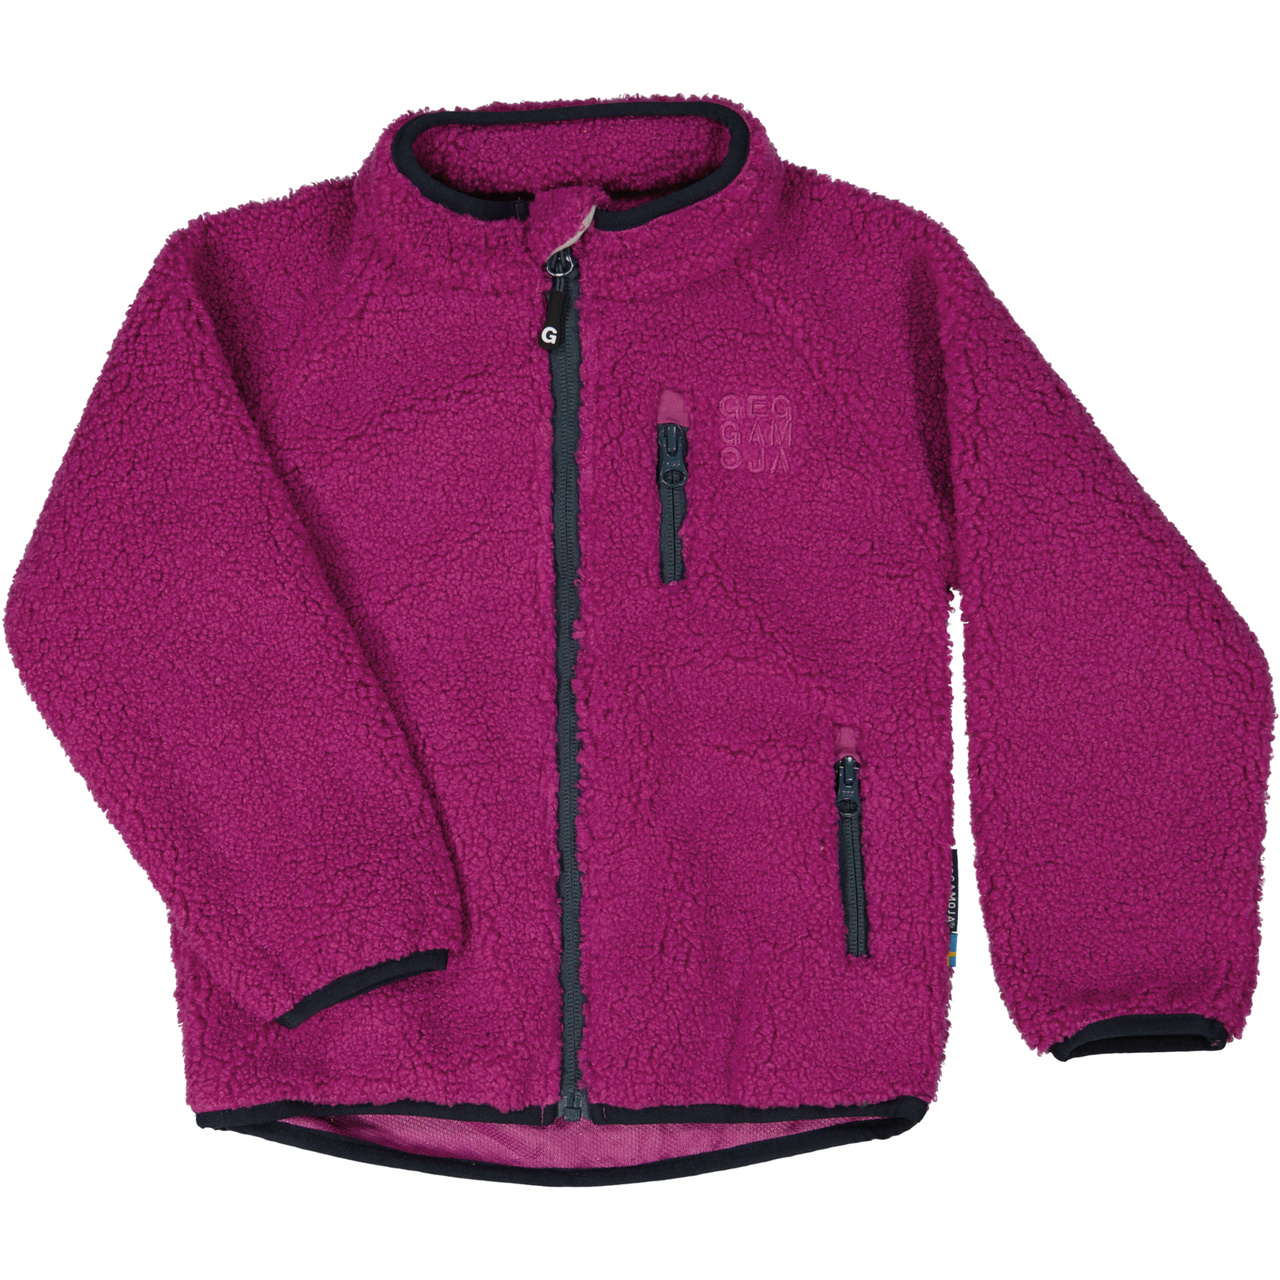 Pile jacket Deep purple  134/140